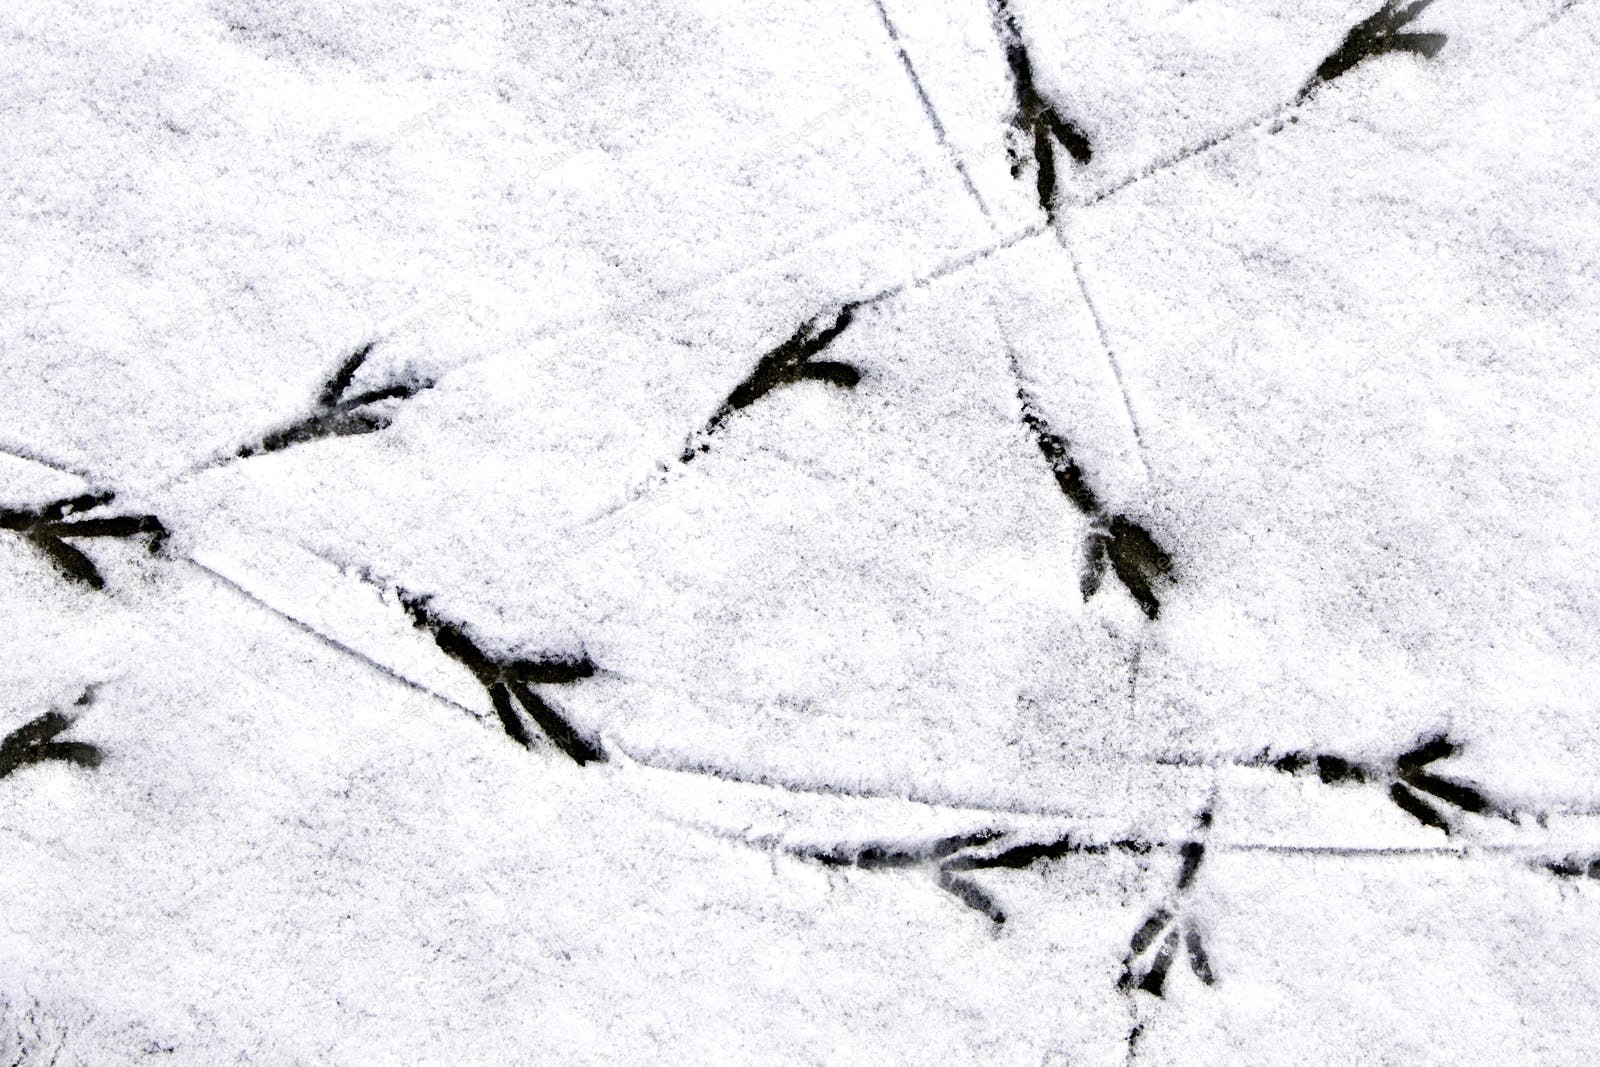 Следы птиц на снегу